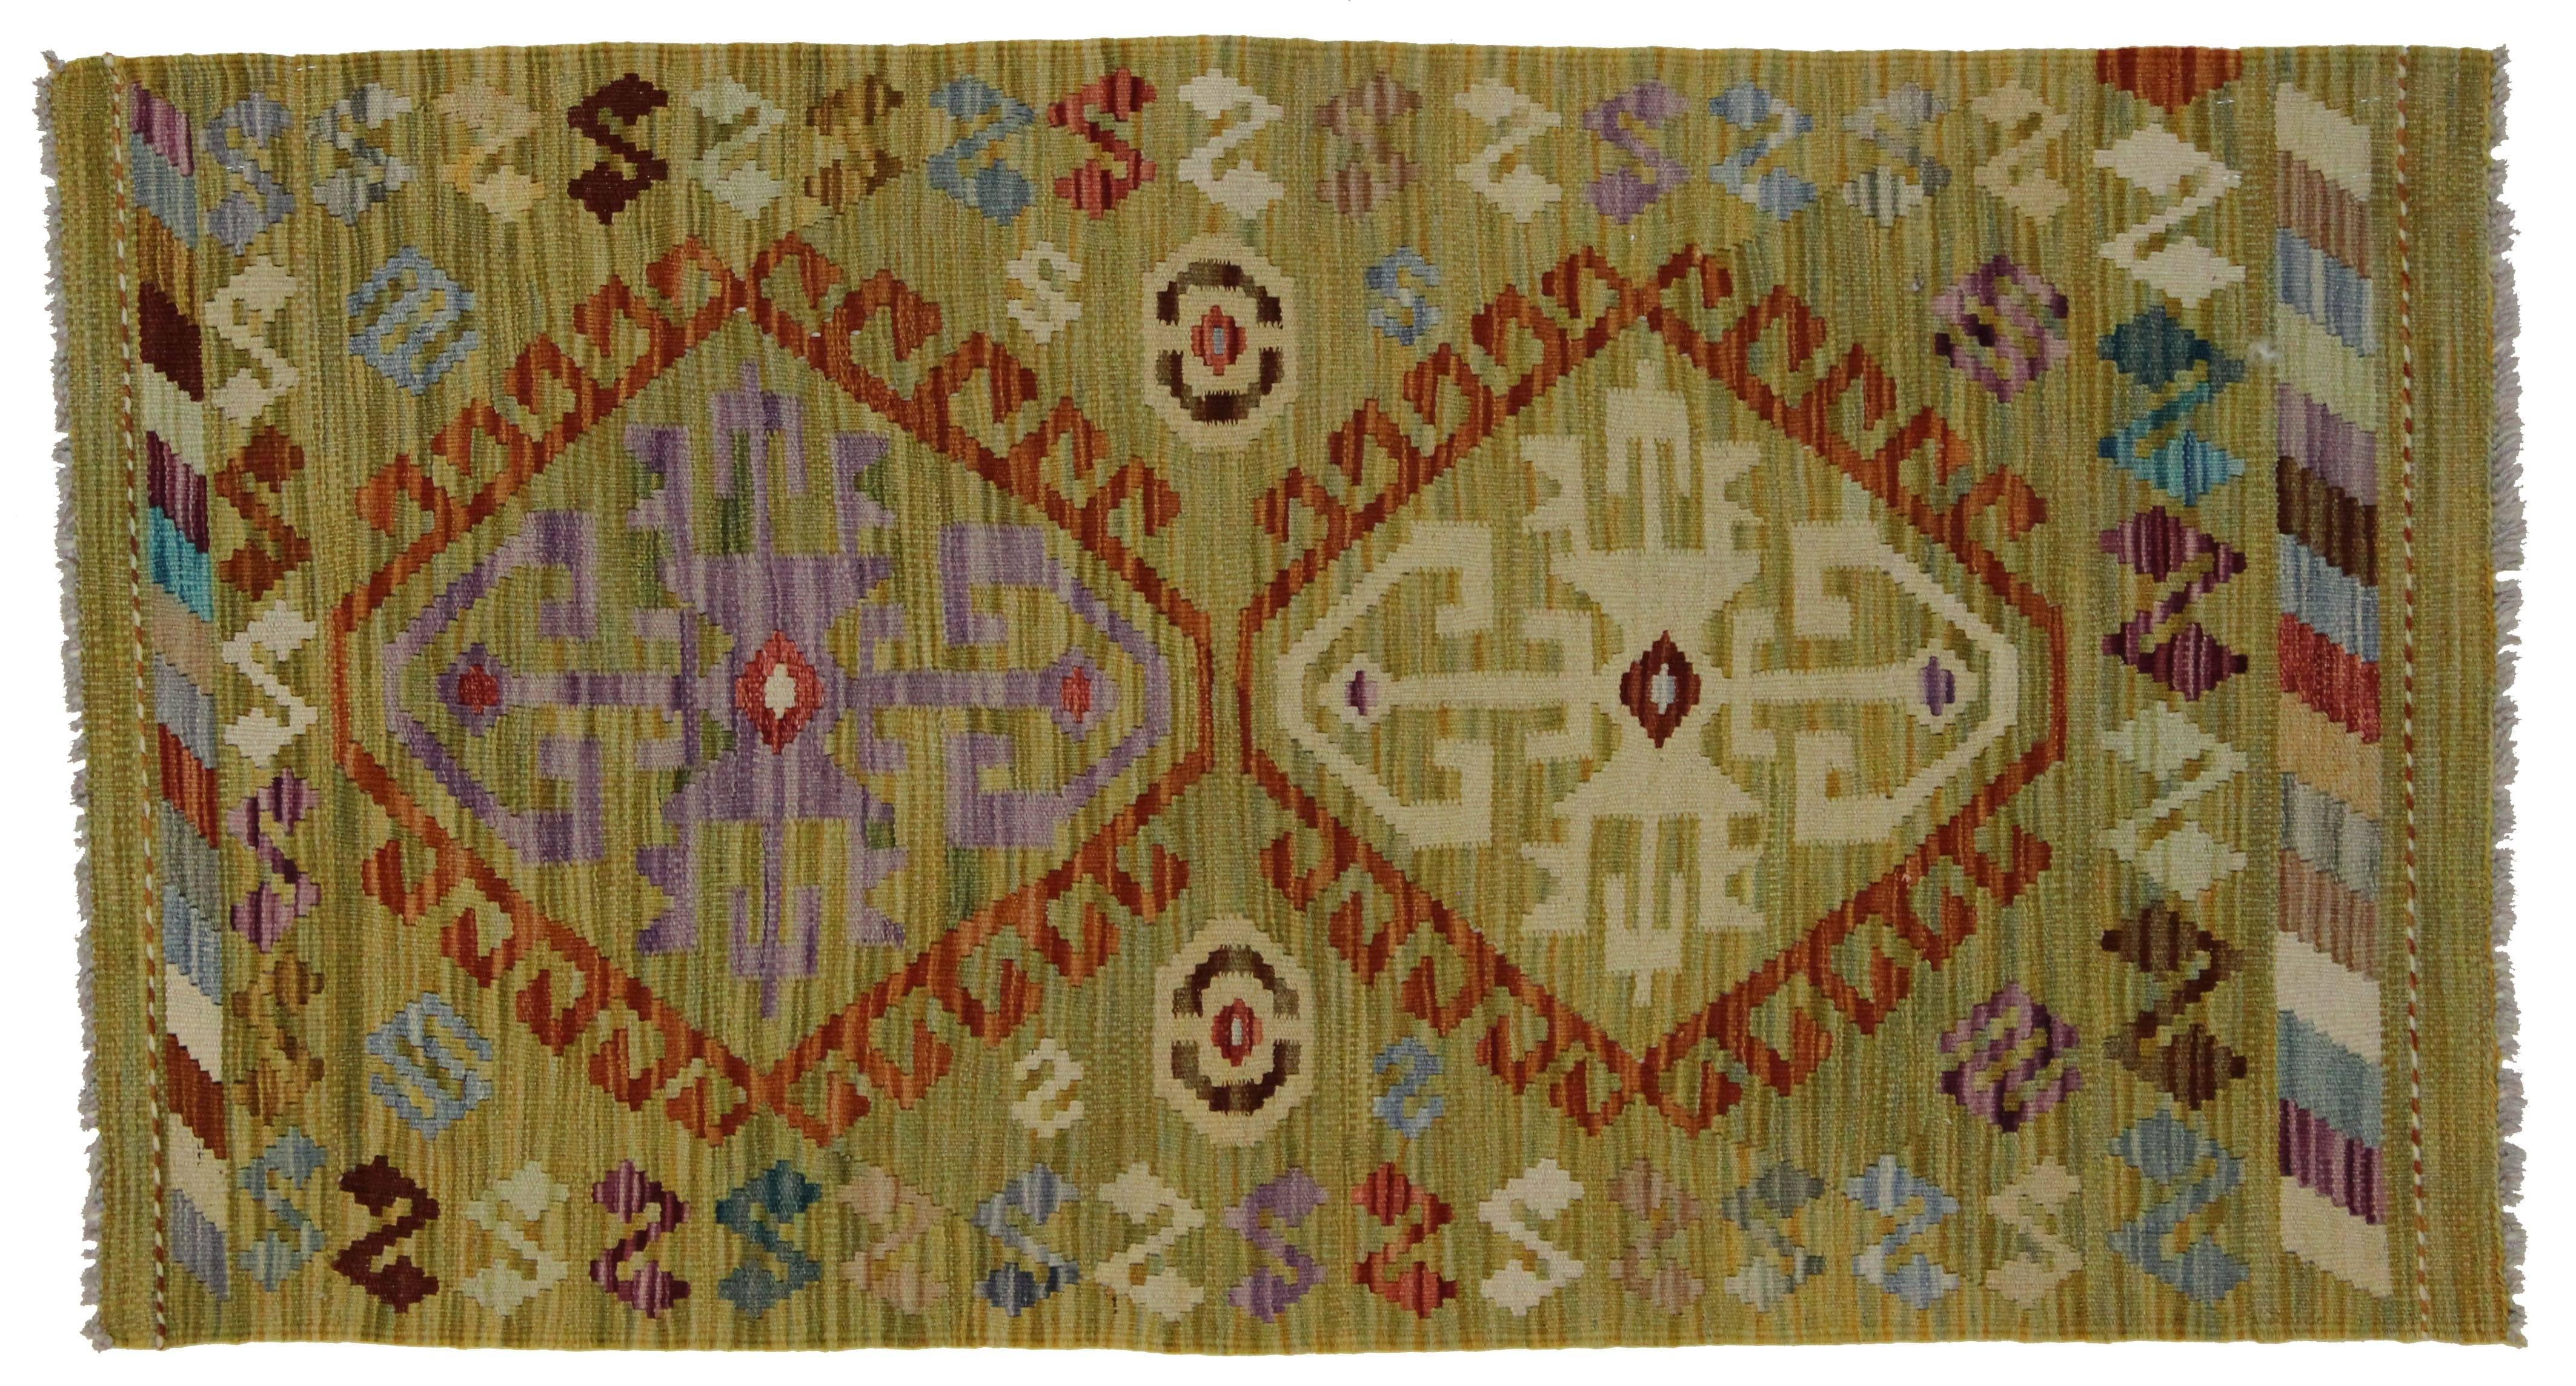 Bohemian Modern Afghani Tribal Kilim Rug with Boho Chic Style, Flatweave Kilim Rug